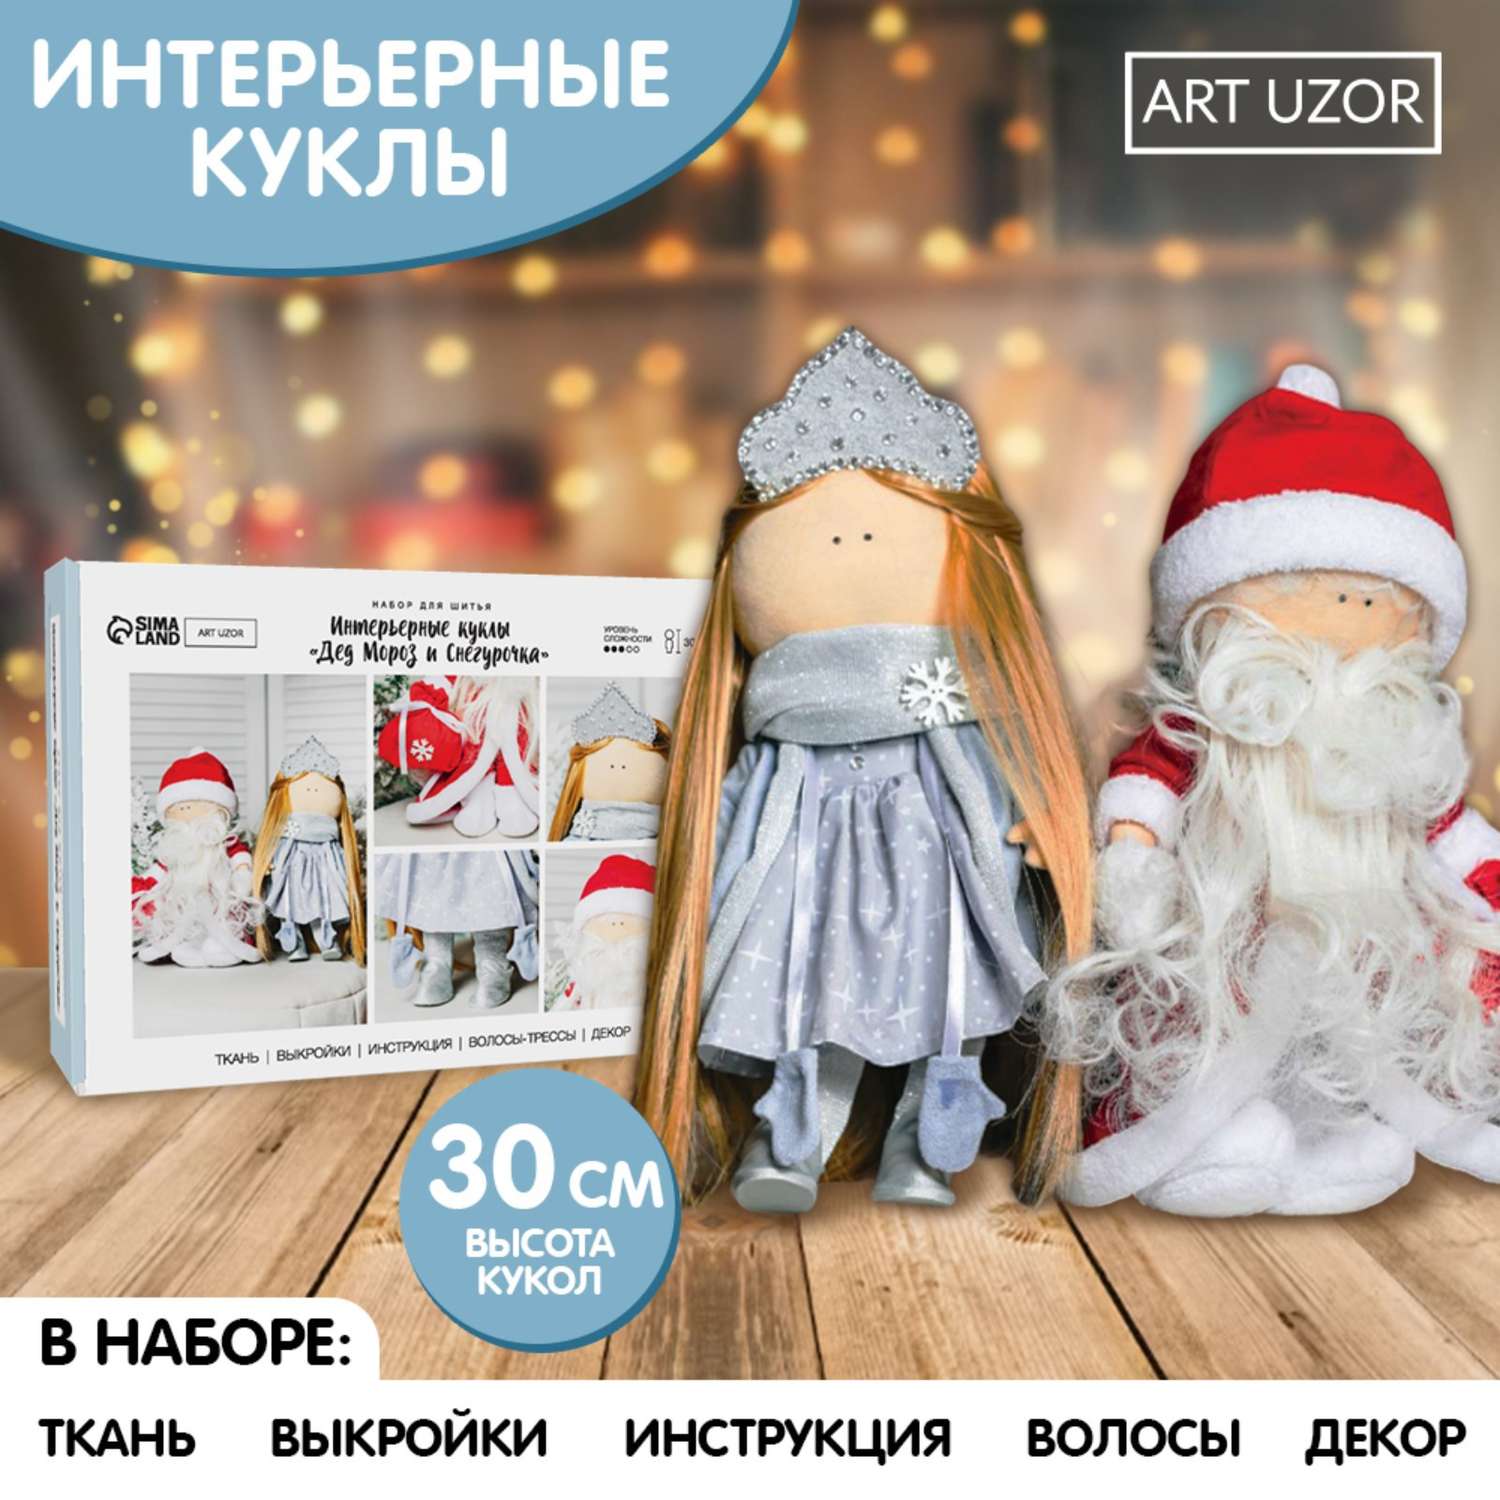 Набор Арт Узор для шитья Интерьерная кукла «Дед Мороз и Снегурочка»30 см - фото 1